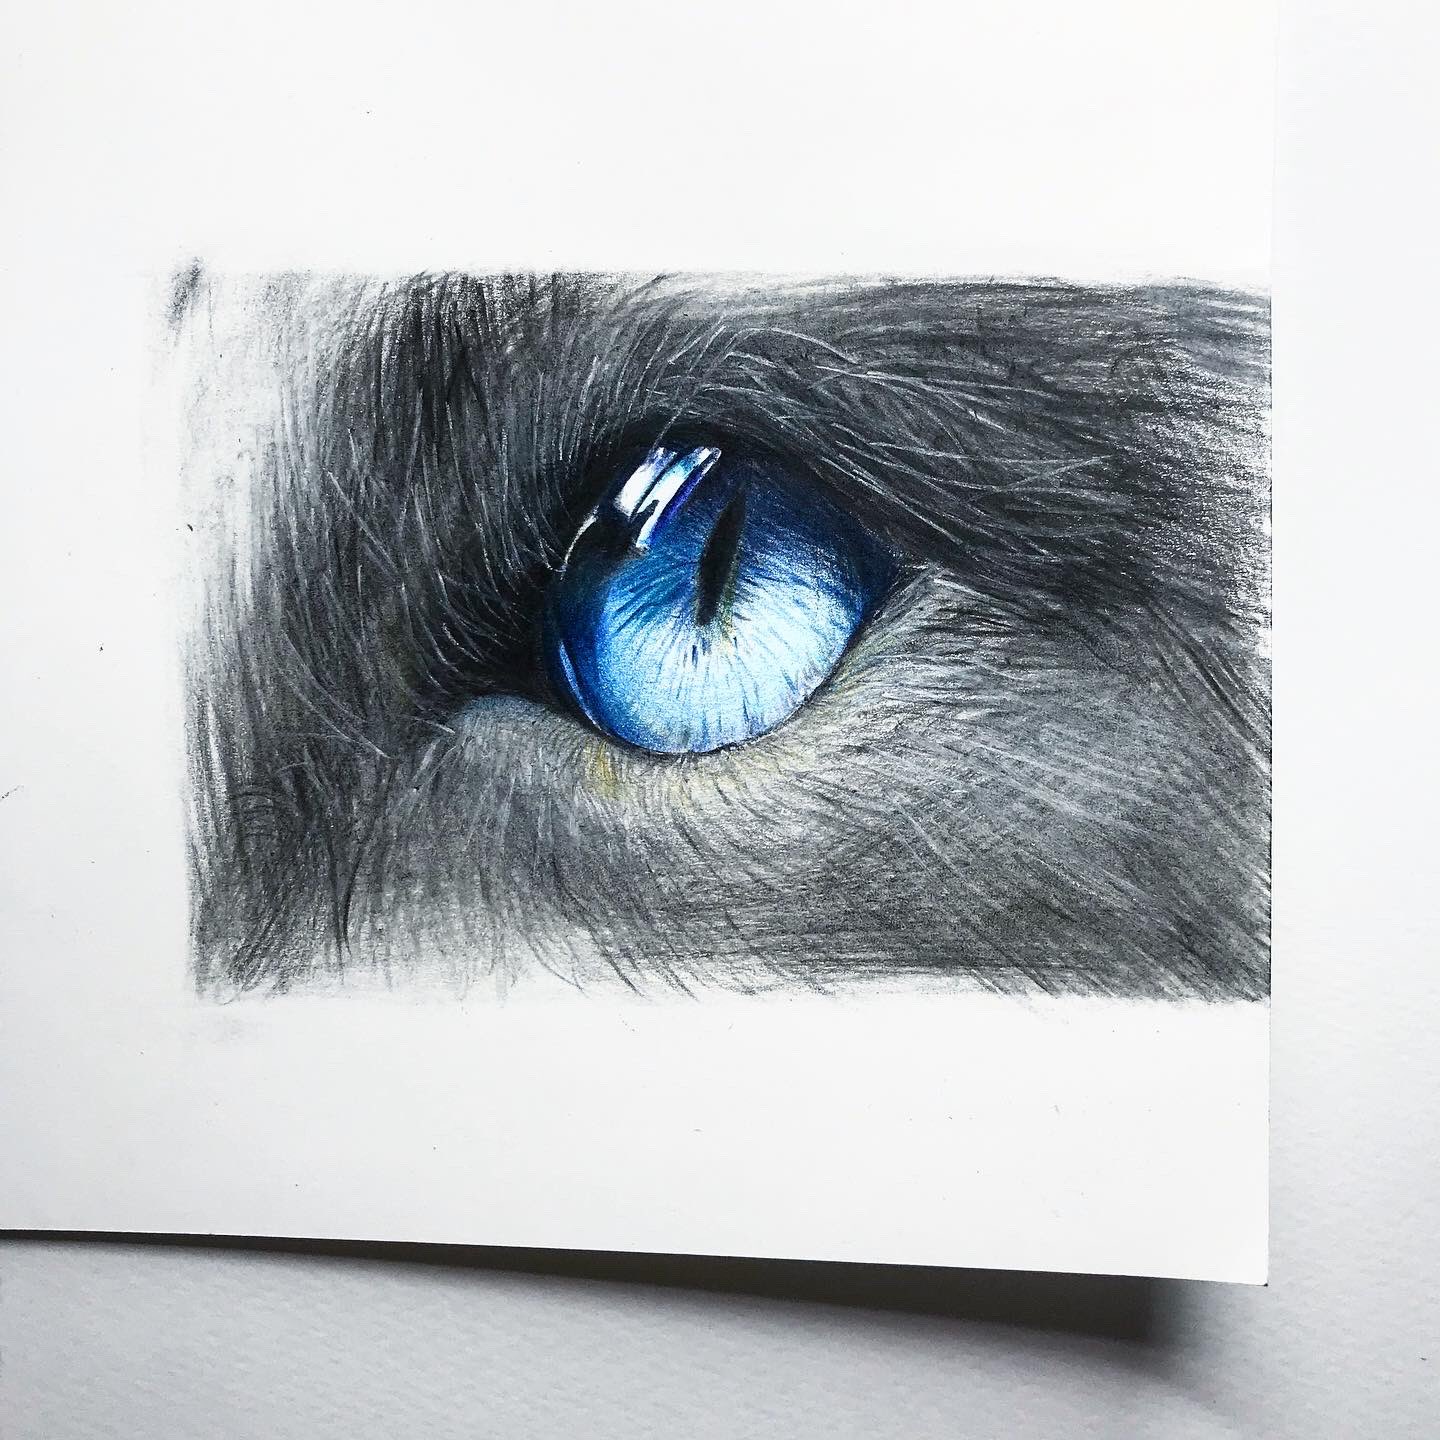 Mk Design 猫の目を描きました 色鉛筆イラスト リアル絵 細密画 猫 イラスト T Co V5pywuqfsf Twitter